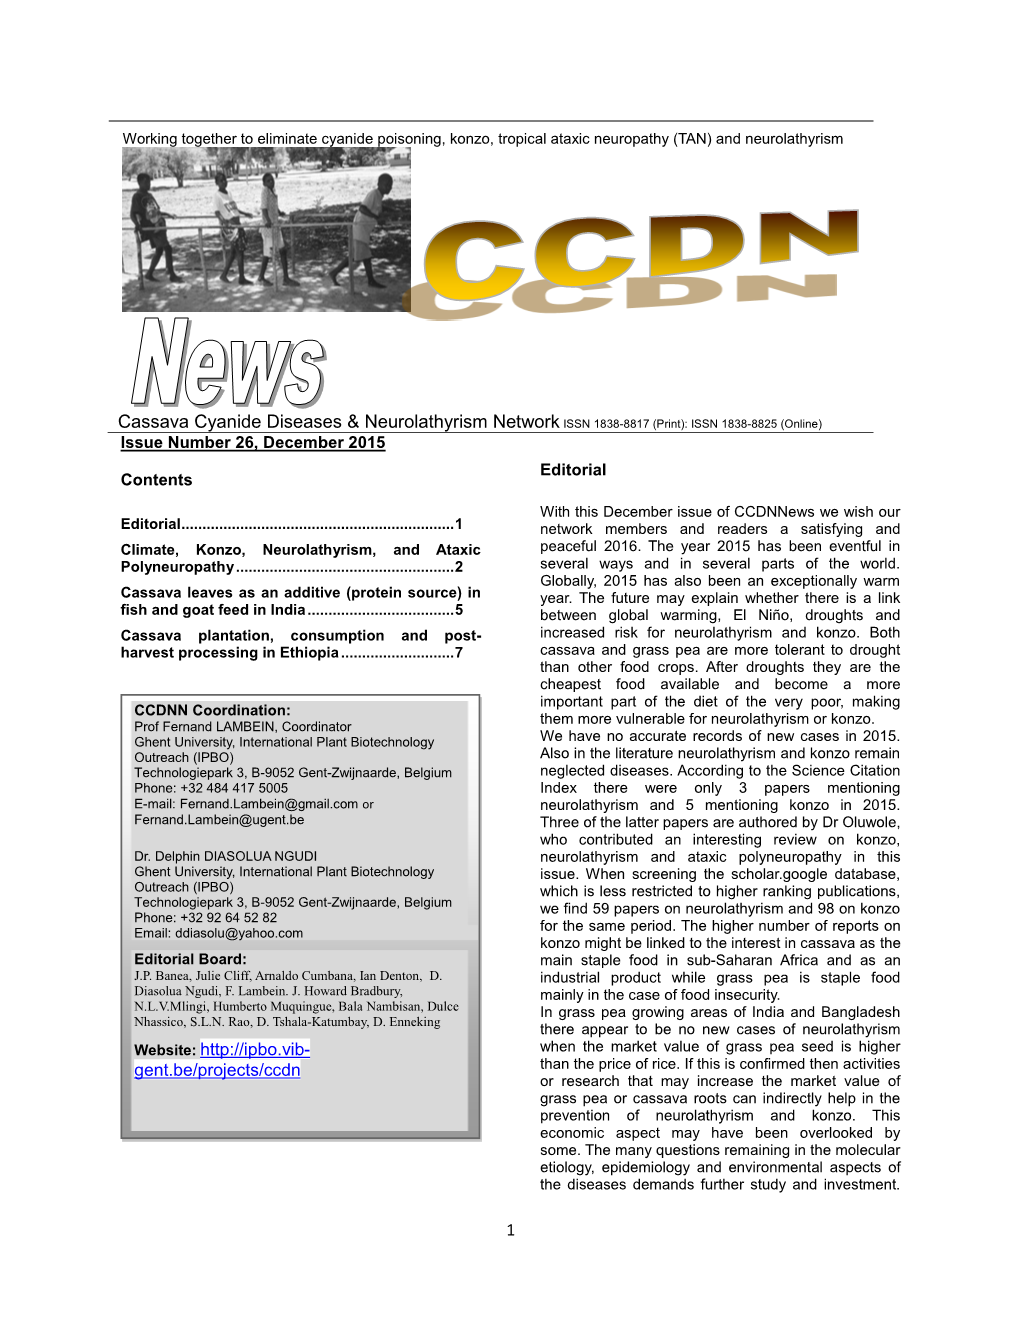 Cassava Cyanide Diseases & Neurolathyrism Network ISSN 1838